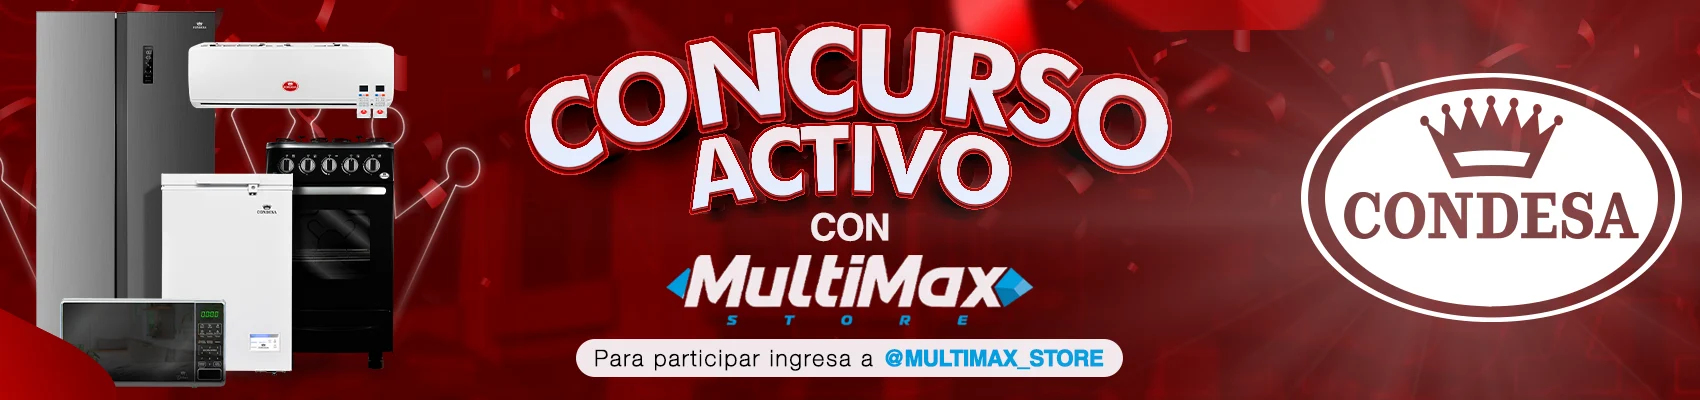 Banner de Concurso Multimax